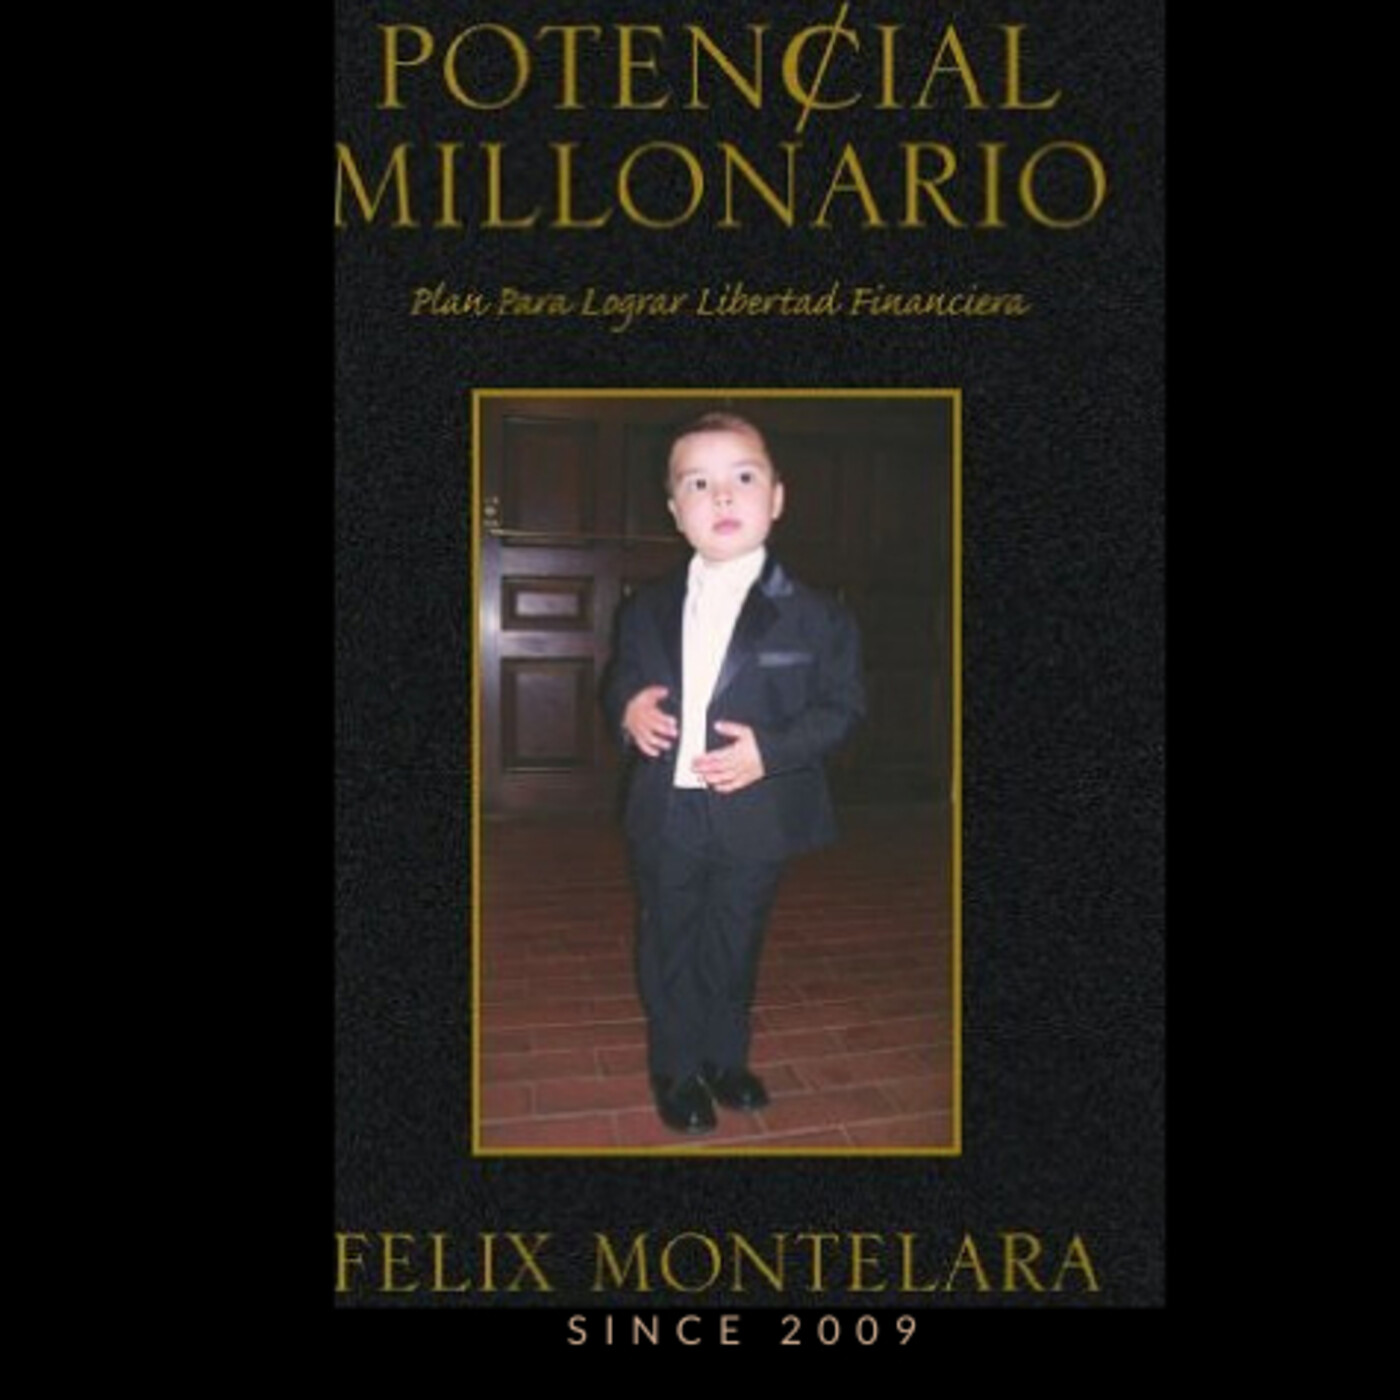 Inversiones Crypto (Bitcoins), Fondos Mutuos y Educativos en Potencial Millonario con Felix Montelara 443